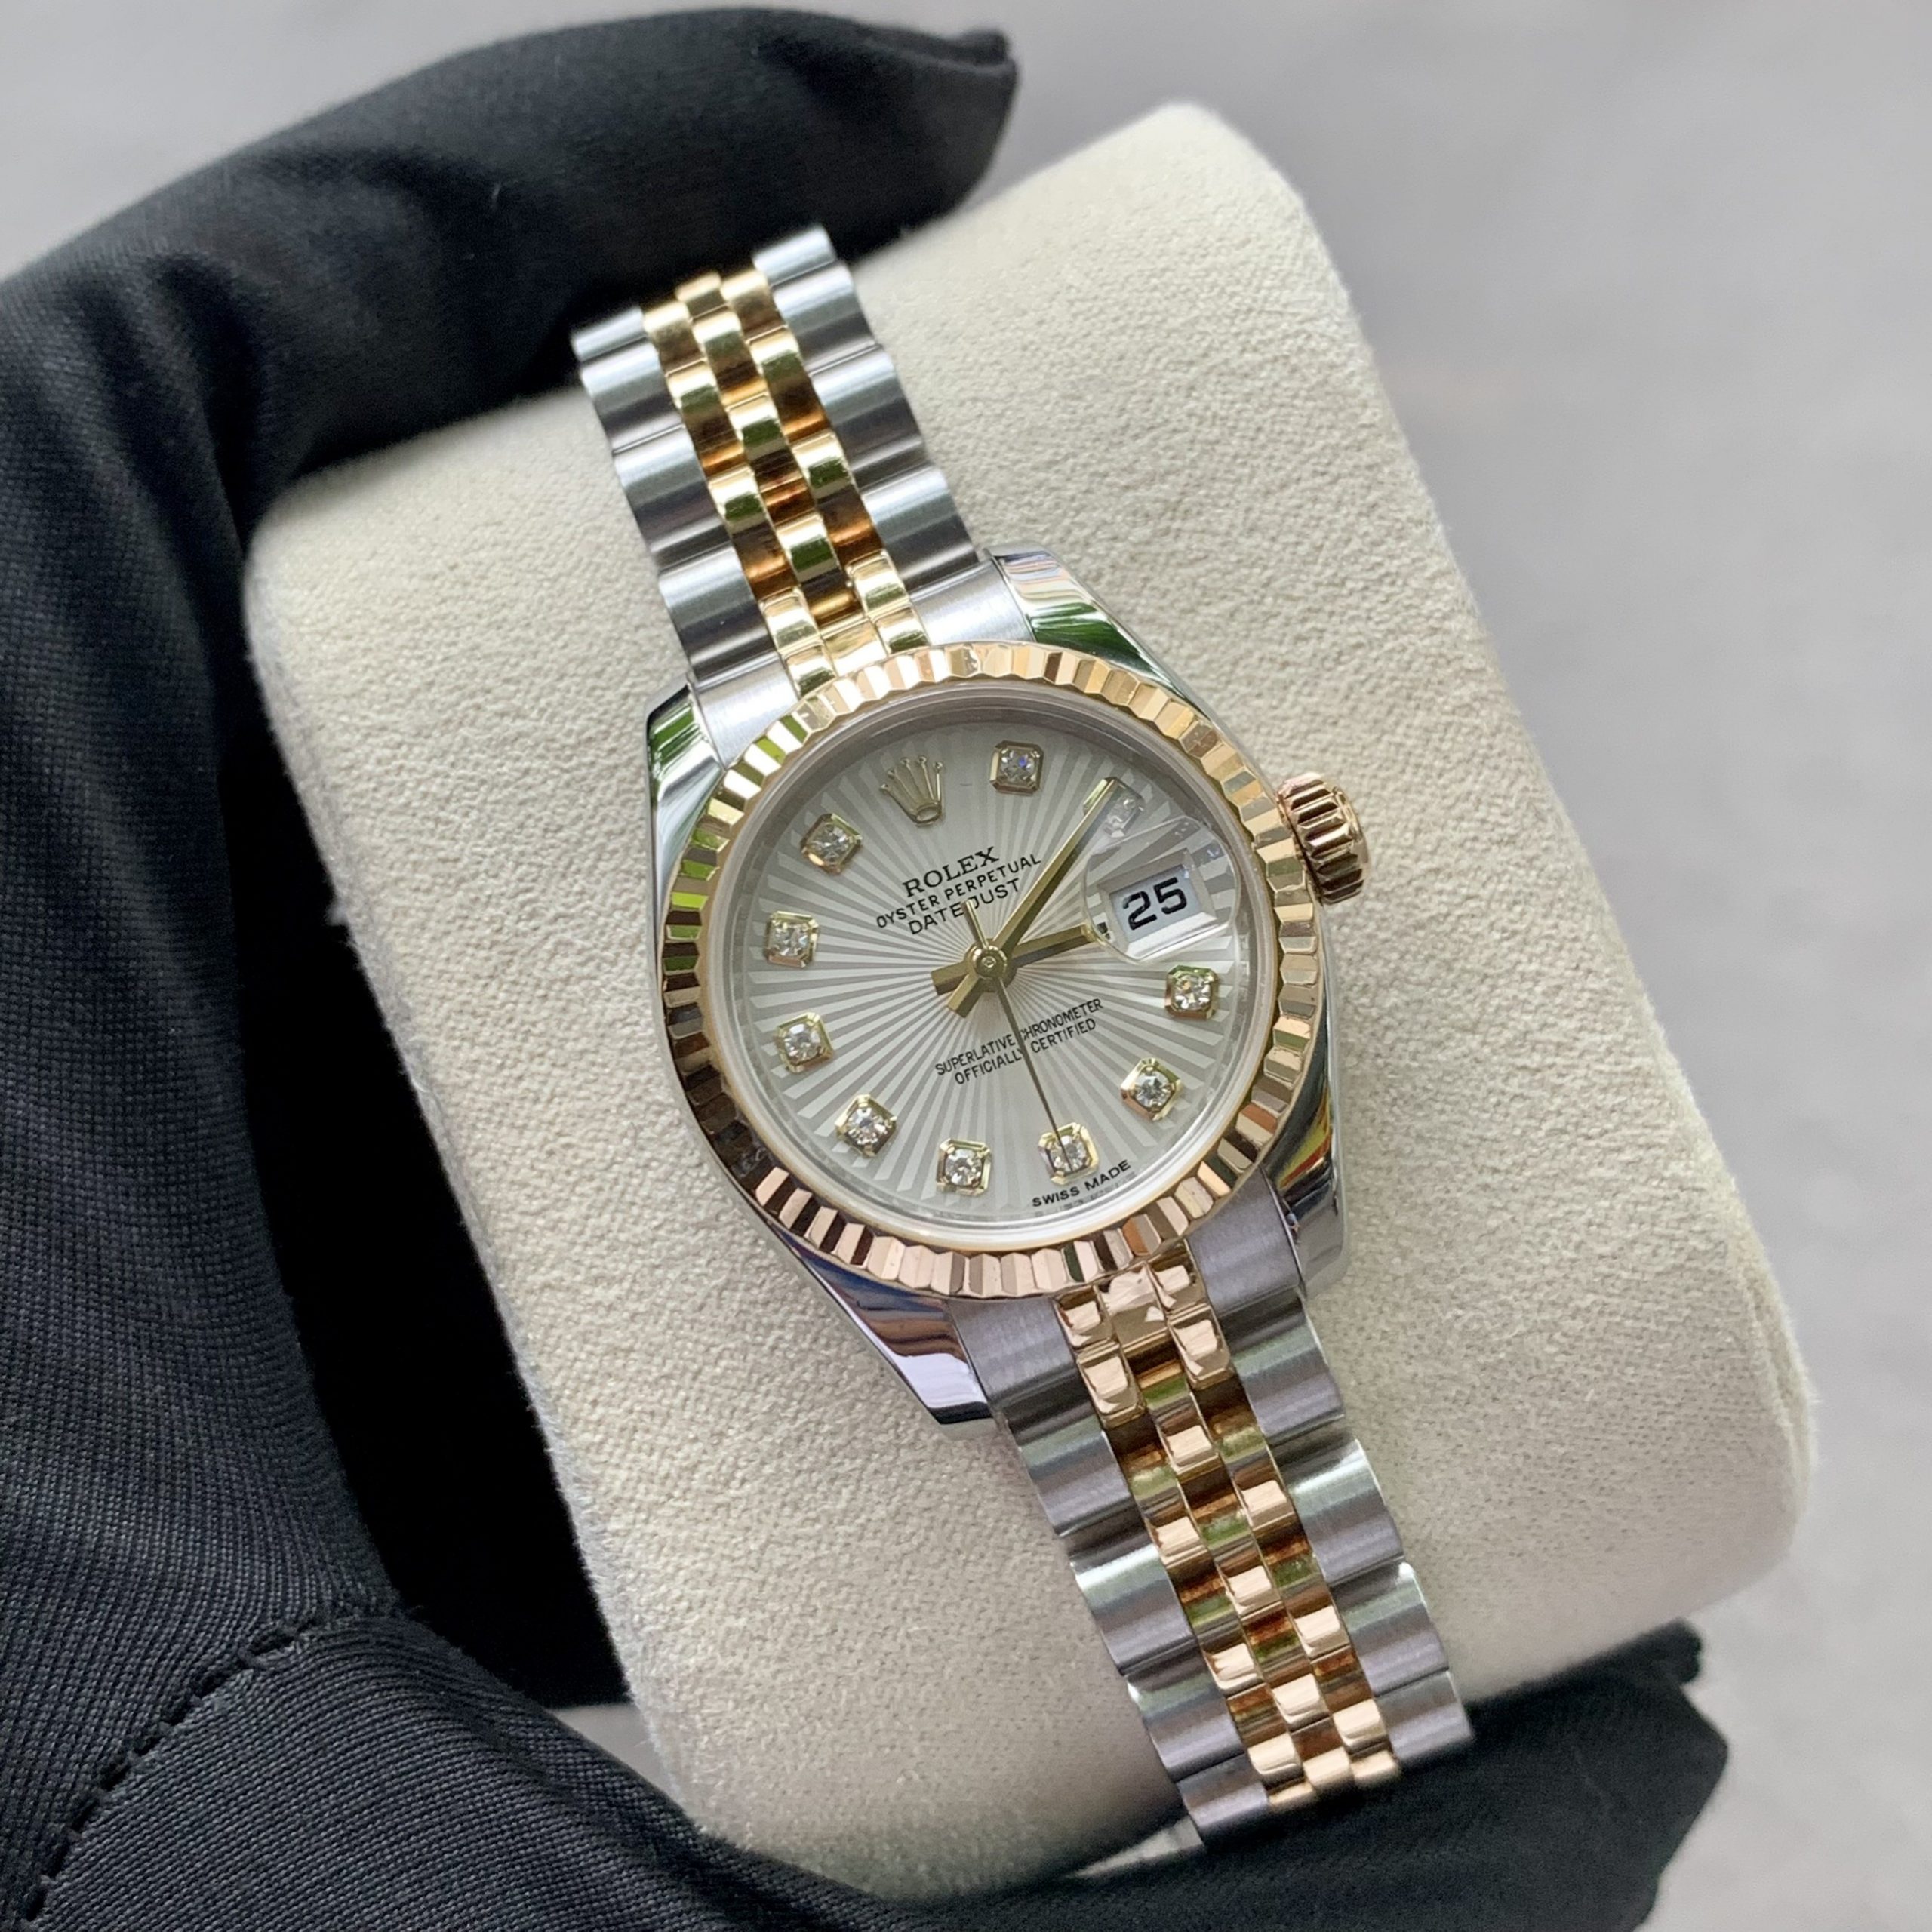 Đồng hồ Nữ Rolex Datejust 179173 mặt trắng ngà sọc quạt cọc số kim cương  demi vàng 18k chính hãng Thụy Sỹ - Mua Đồng Hồ